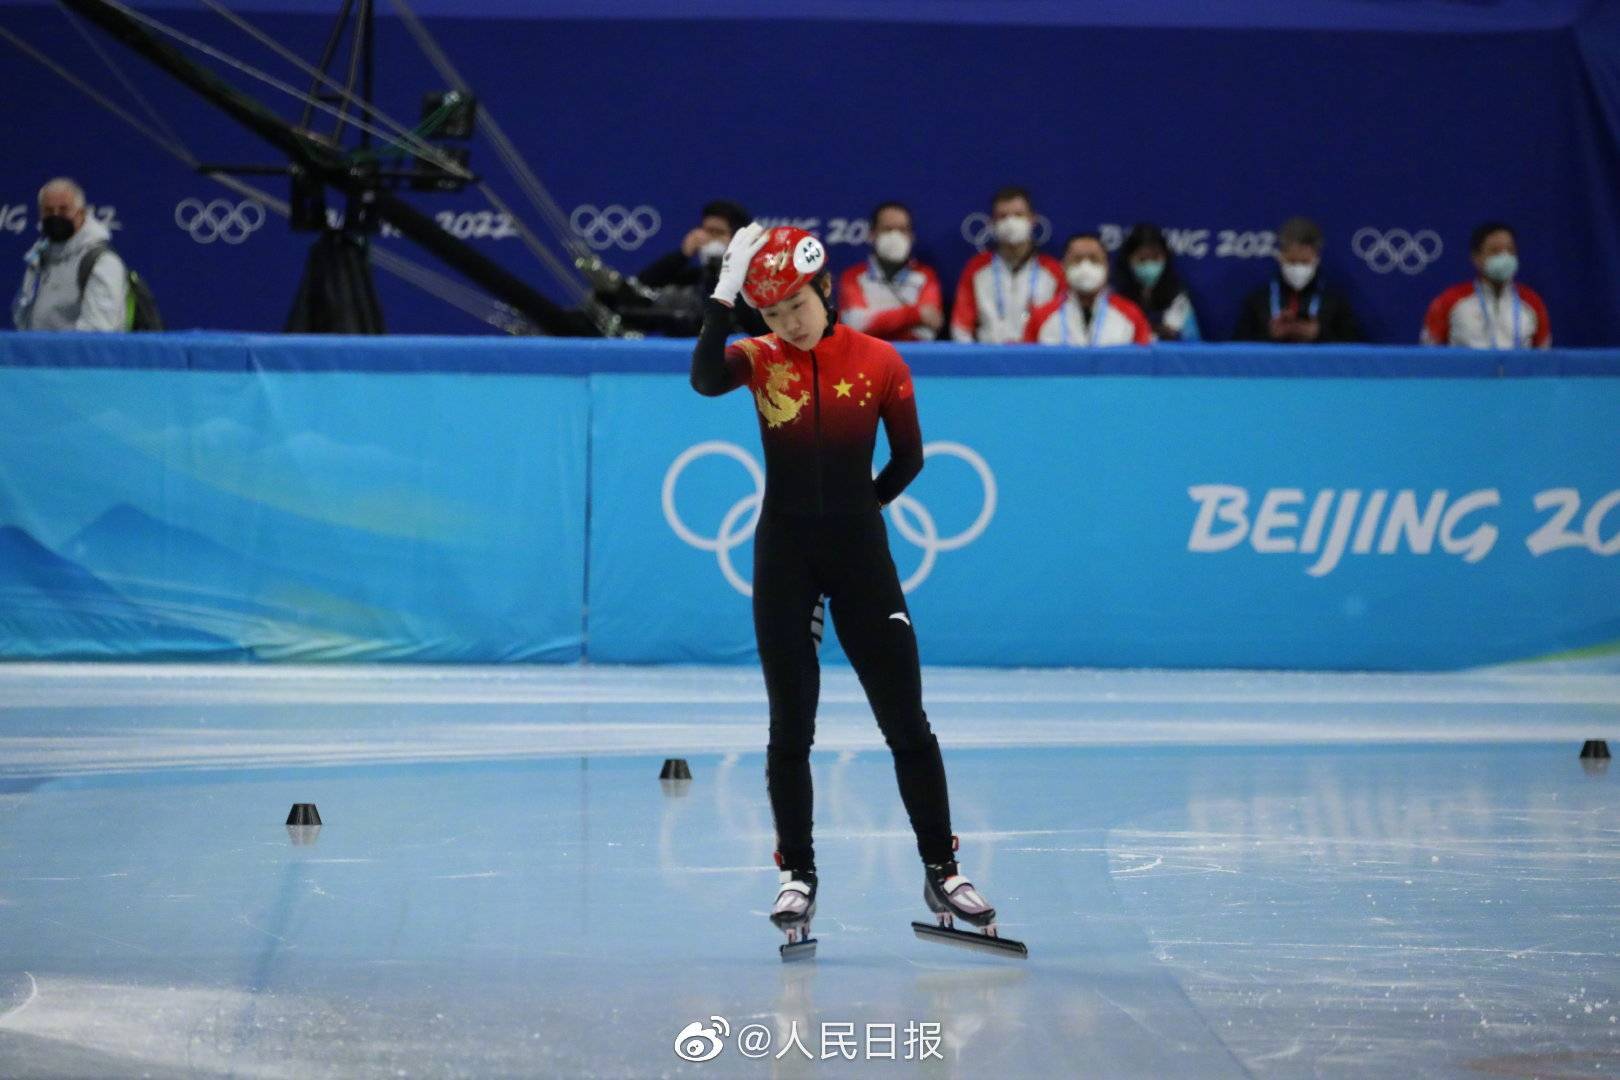 女子|张雨婷晋级短道速滑女子500米决赛